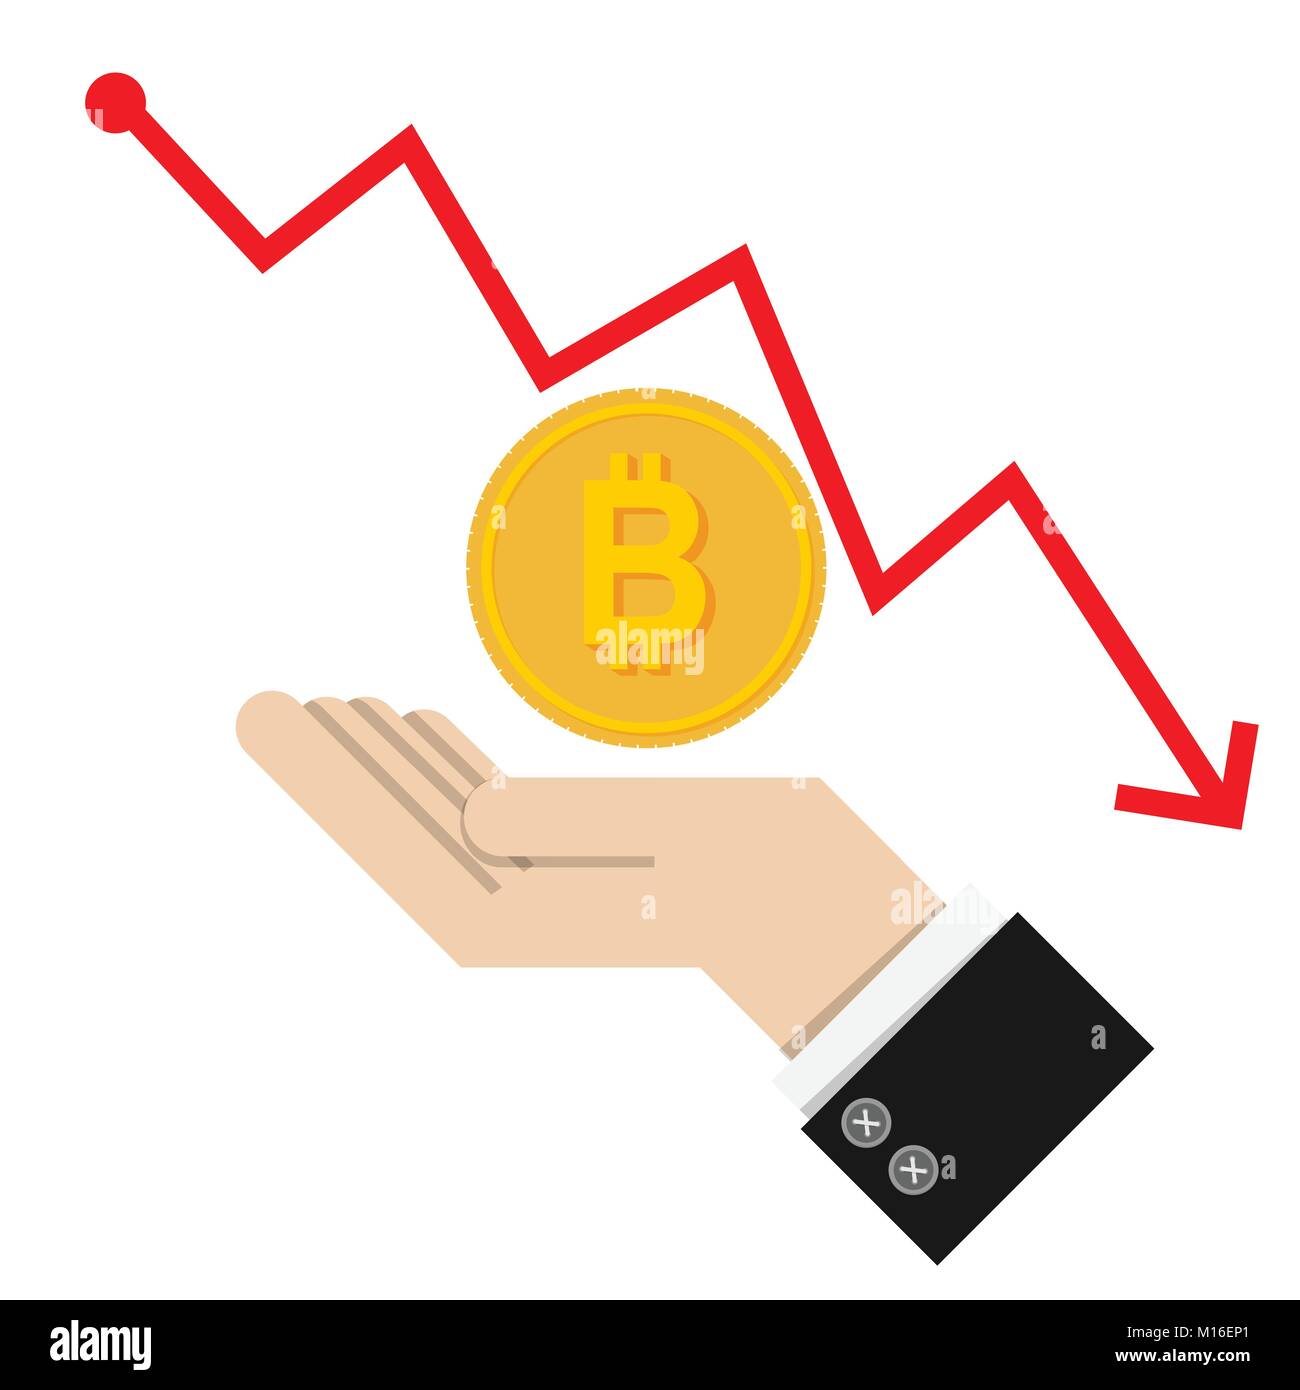 Vektor. Finanzielle fallen Konzept mit goldenen Bitcoins Leiter auf rote Grafik Hintergrund. auf weißem Hintergrund. Trade Finance Konzept. Stock Vektor